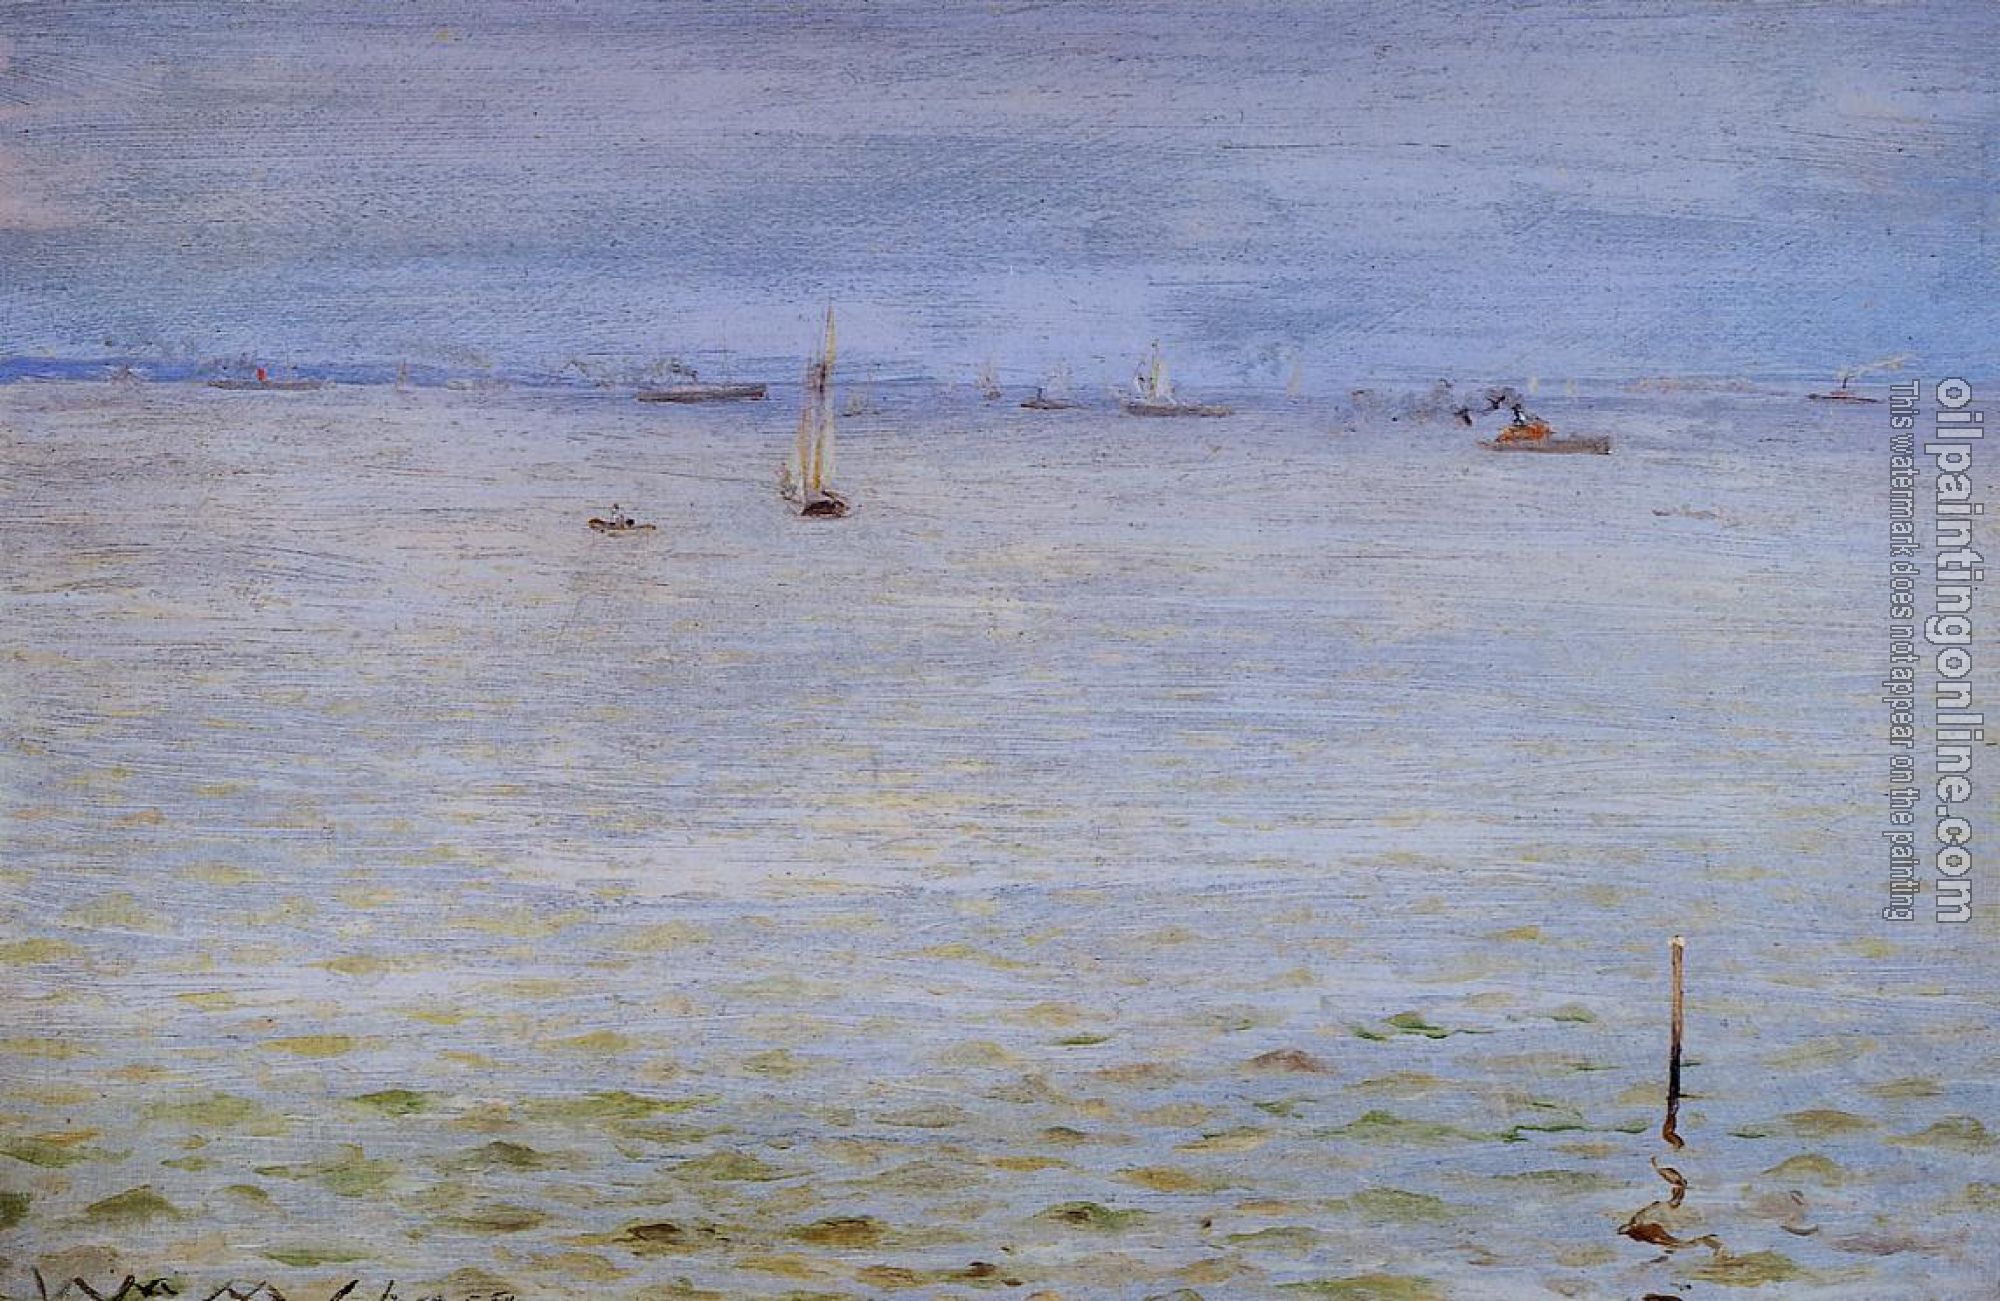 Chase, William Merritt - Seascape c1888